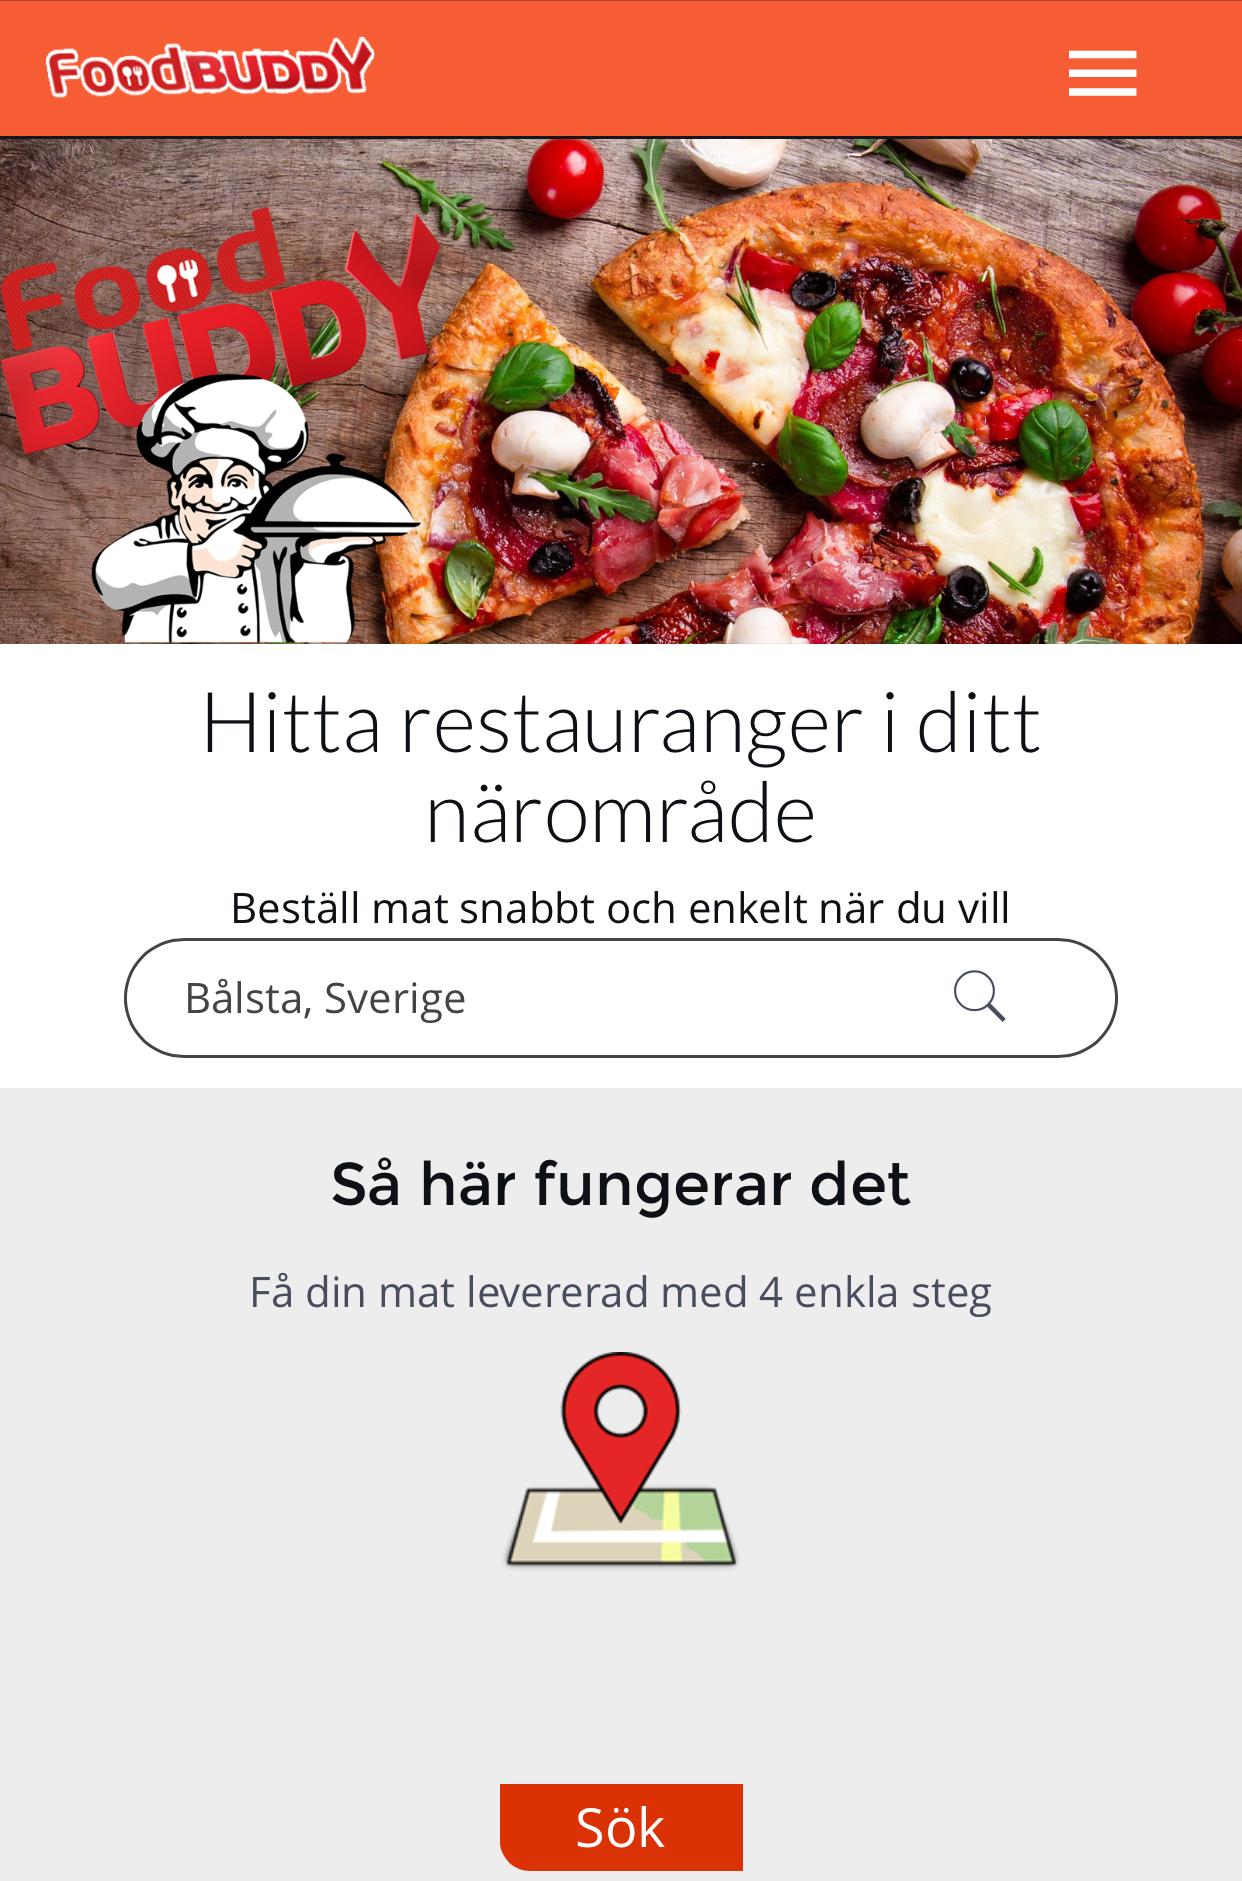 Foodbuddy - Hemkörning av mat for Android - APK Download